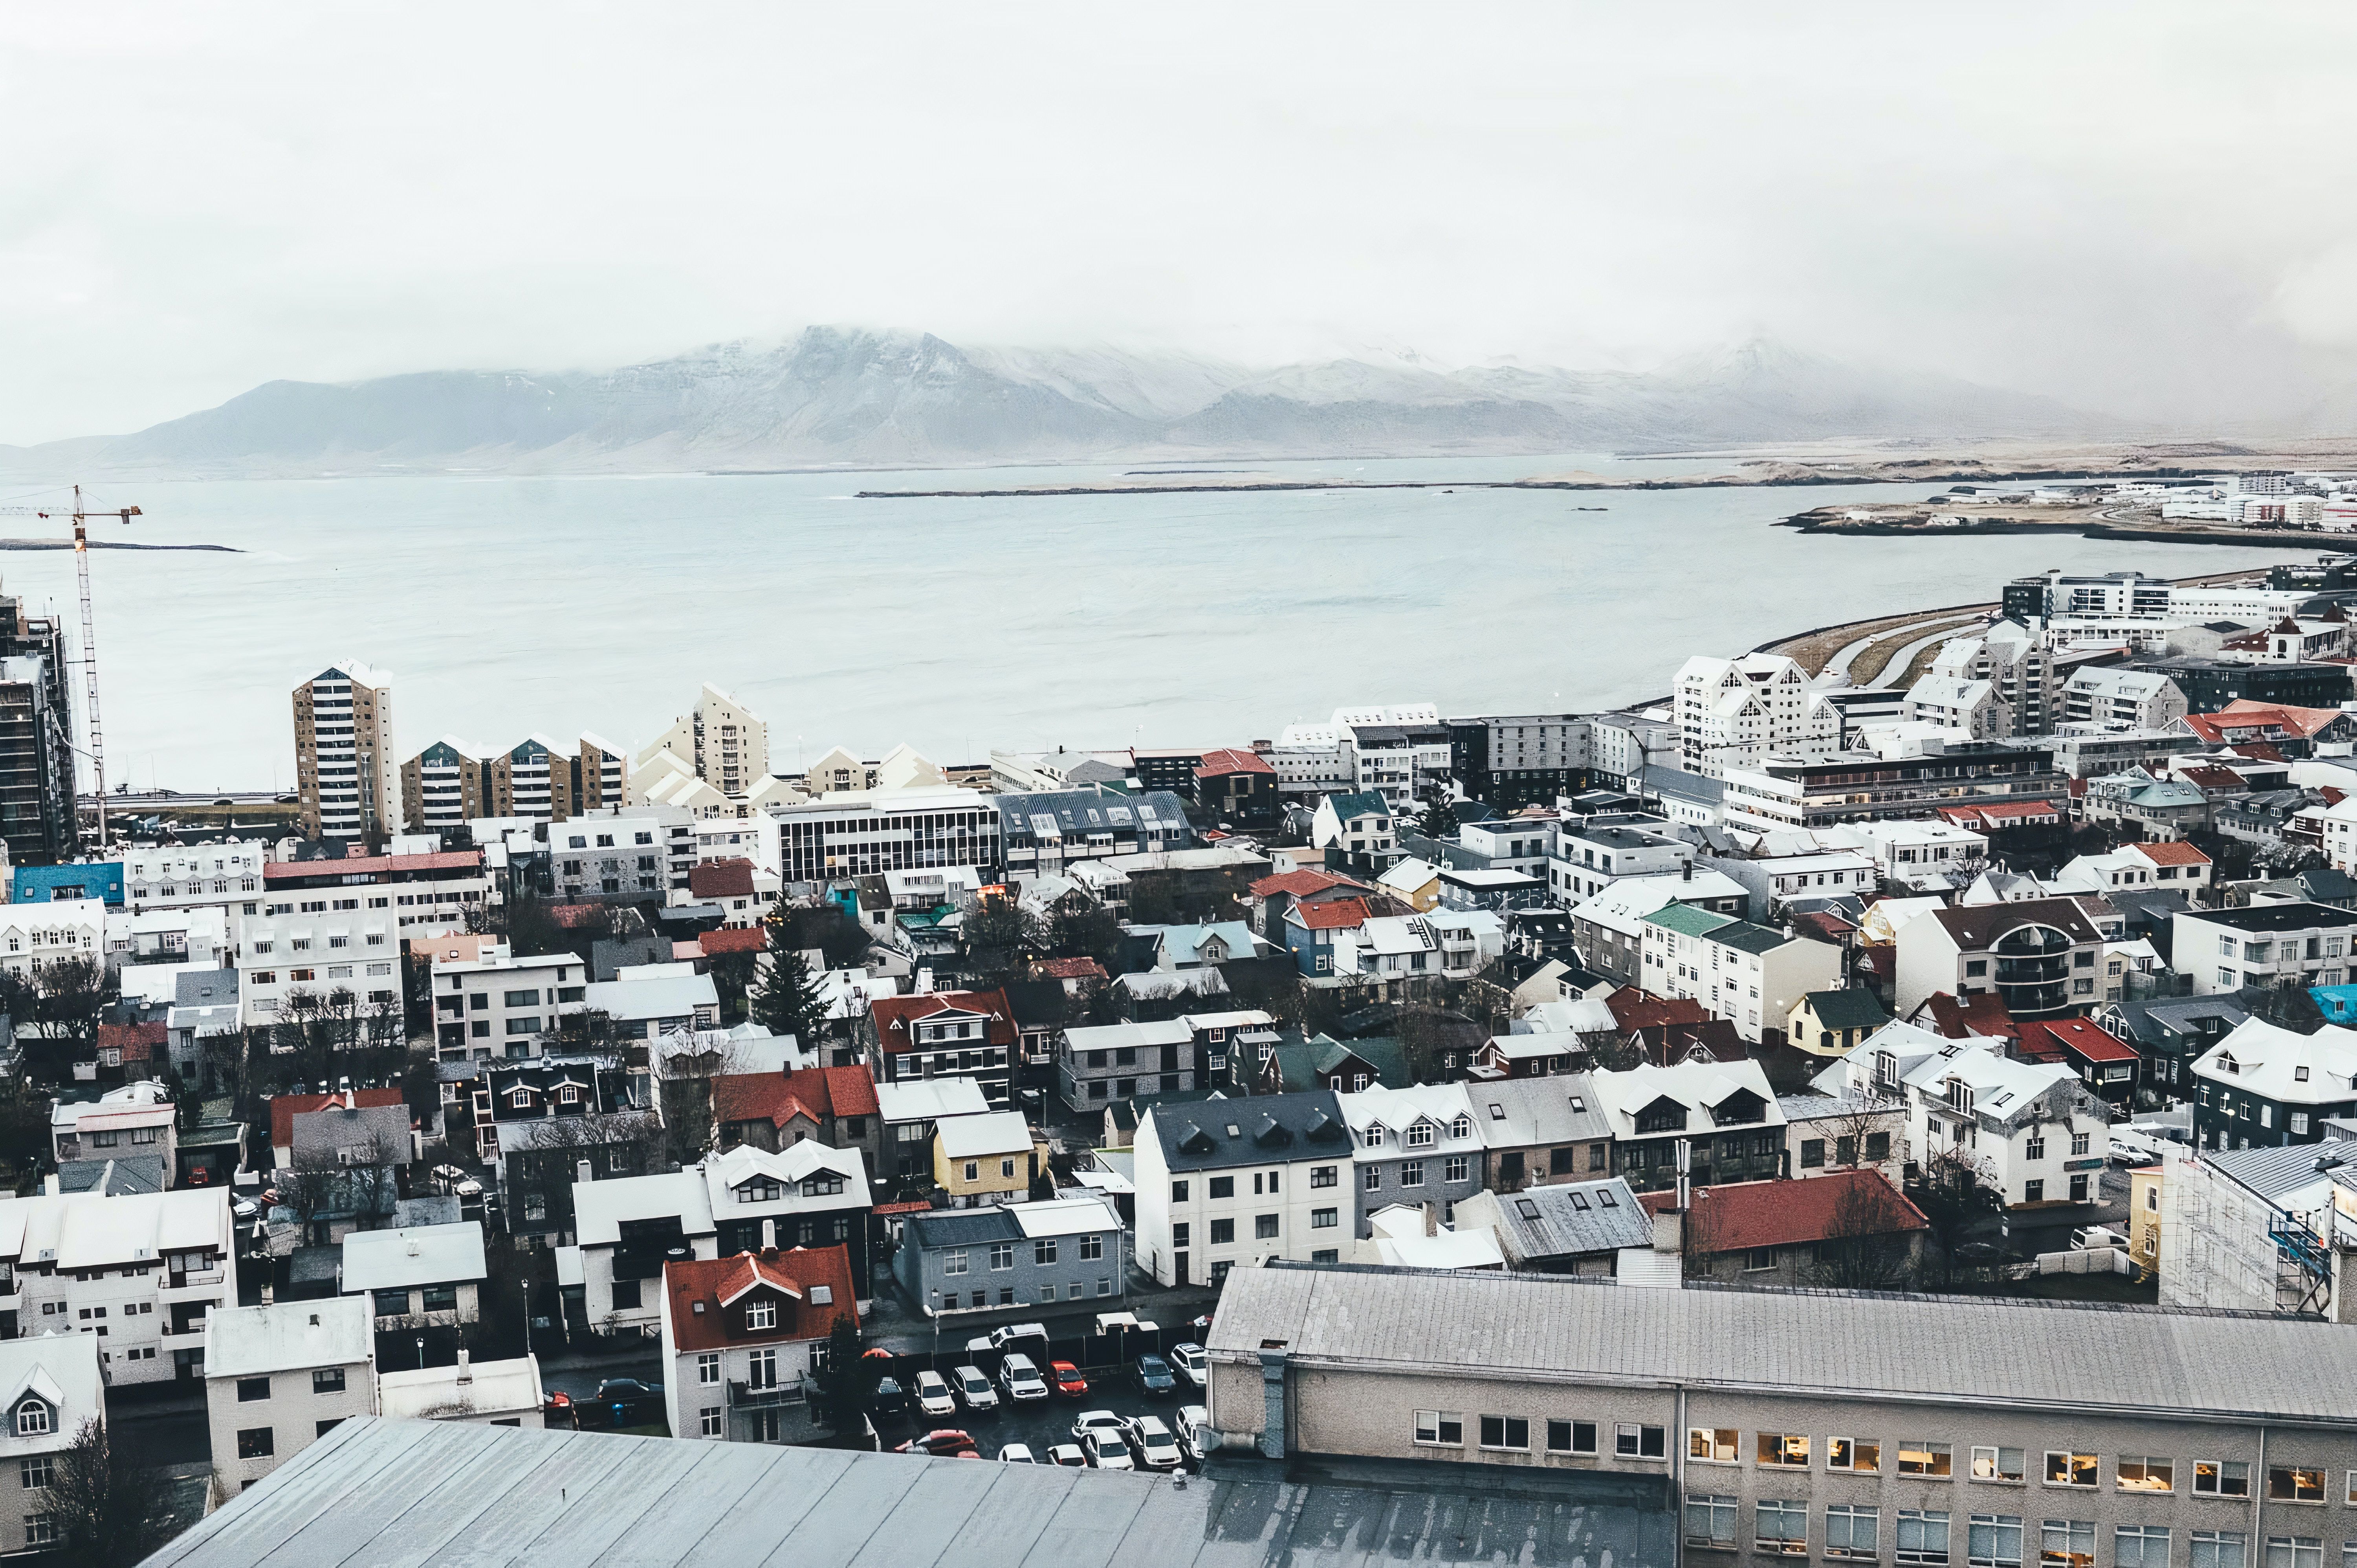 Aerial of Reykjavik in the winter